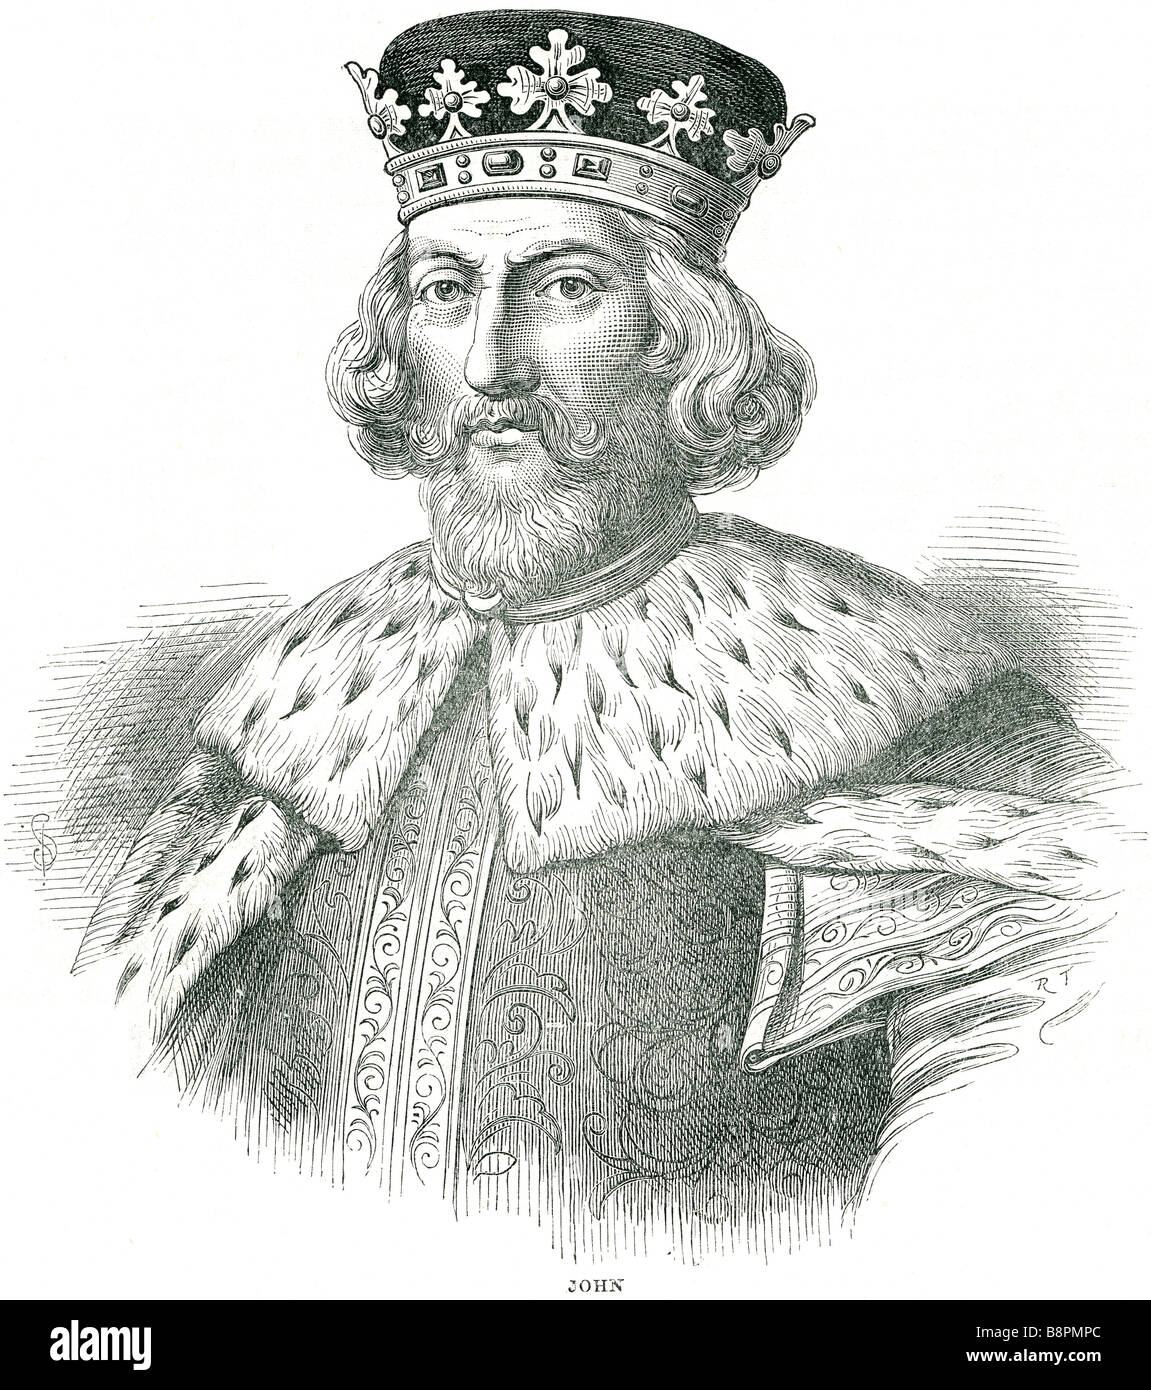 Giovanni (23 dicembre 1166 - 19 ottobre 1216) aveva regnato come Re di Inghilterra dal 6 aprile 1199, fino alla sua morte. Egli è riuscito a thr Foto Stock